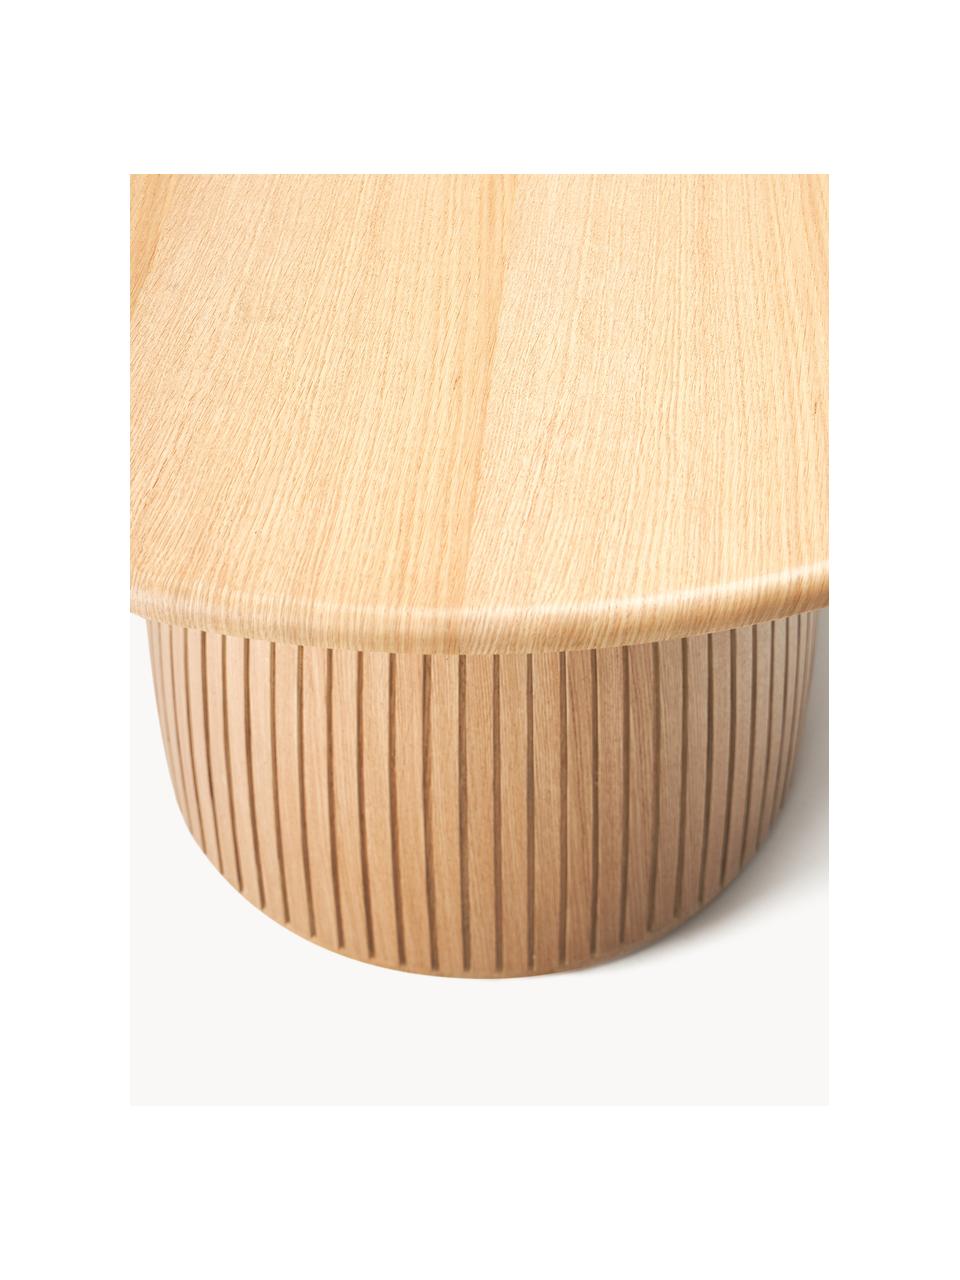 Kulatý jídelní stůl s drážkovanou strukturou Nelly, různé velikosti, Dubová dýha, s MDF deska (dřevovláknitá deska střední hustoty), certifikace FSC, Dubové dřevo, Ø 140 cm